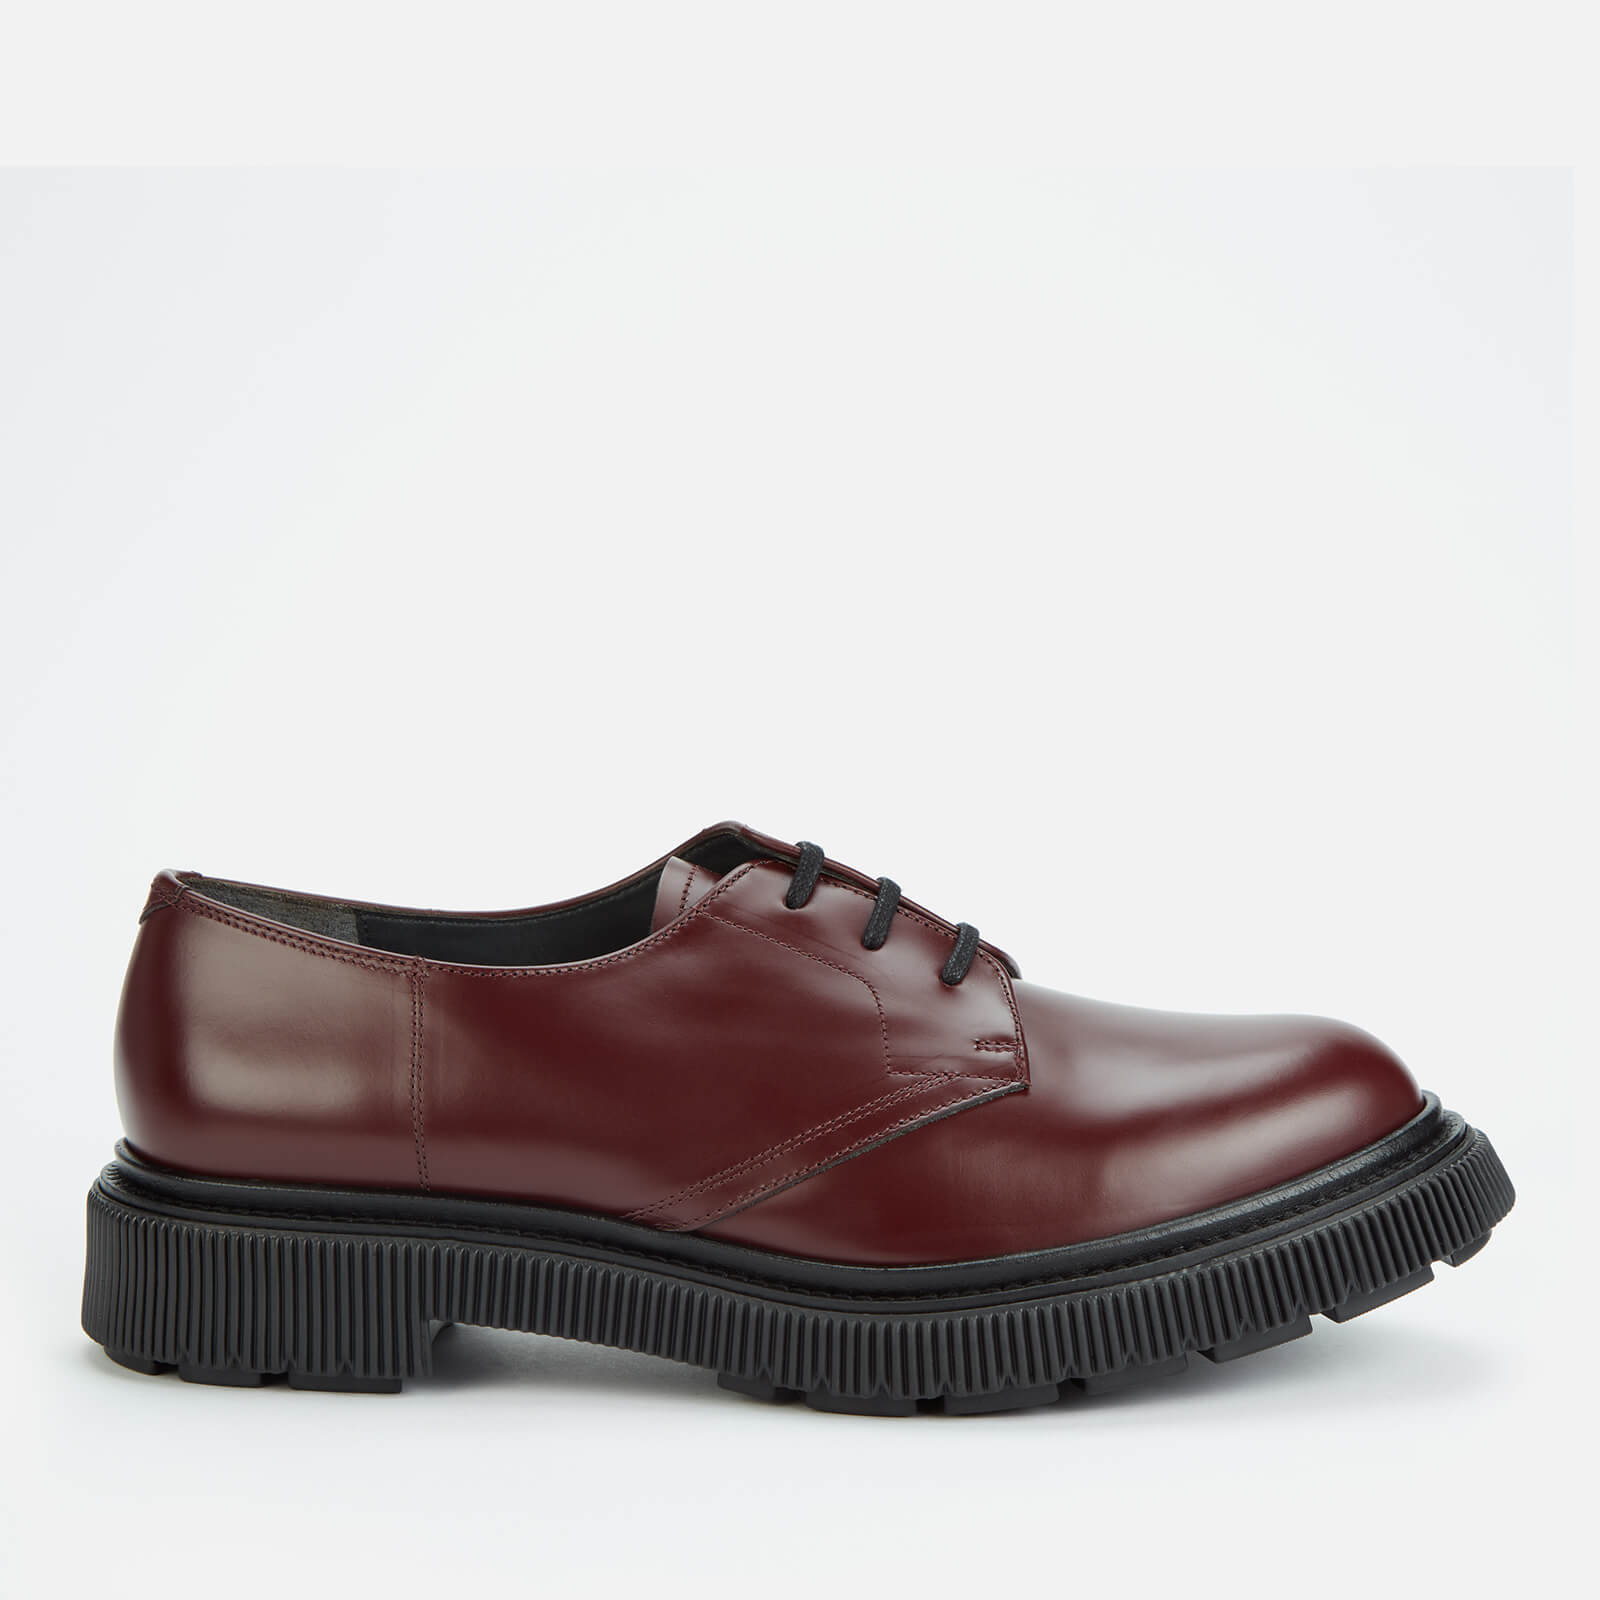 Adieu Men's Type 132 Leather Derby Shoes - Bordeaux - UK 7